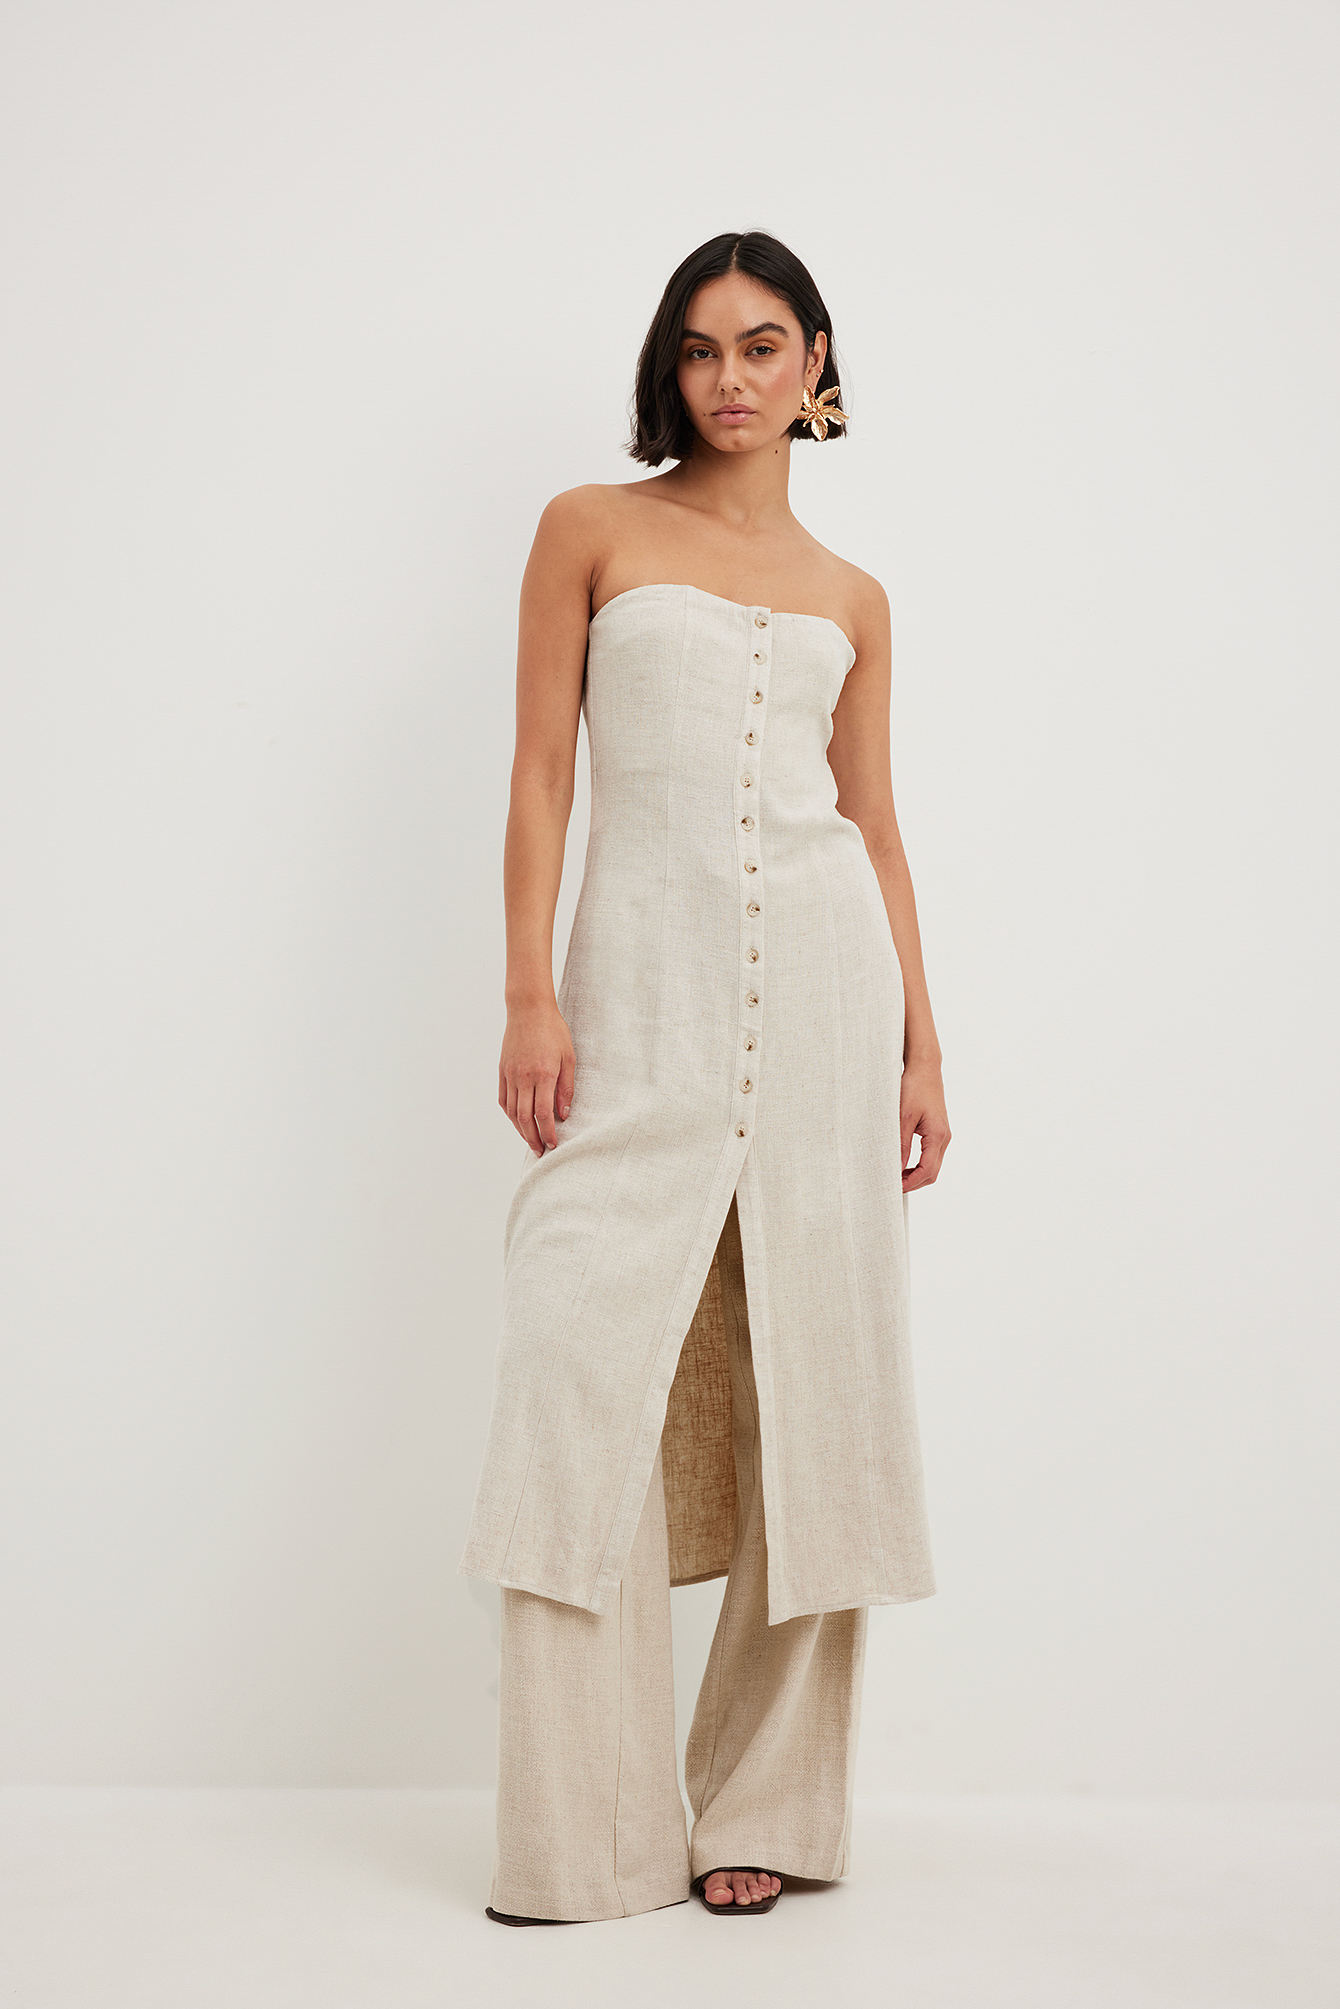 Front Knot Linen Shirt Dress - Light Beige - Mini dresses